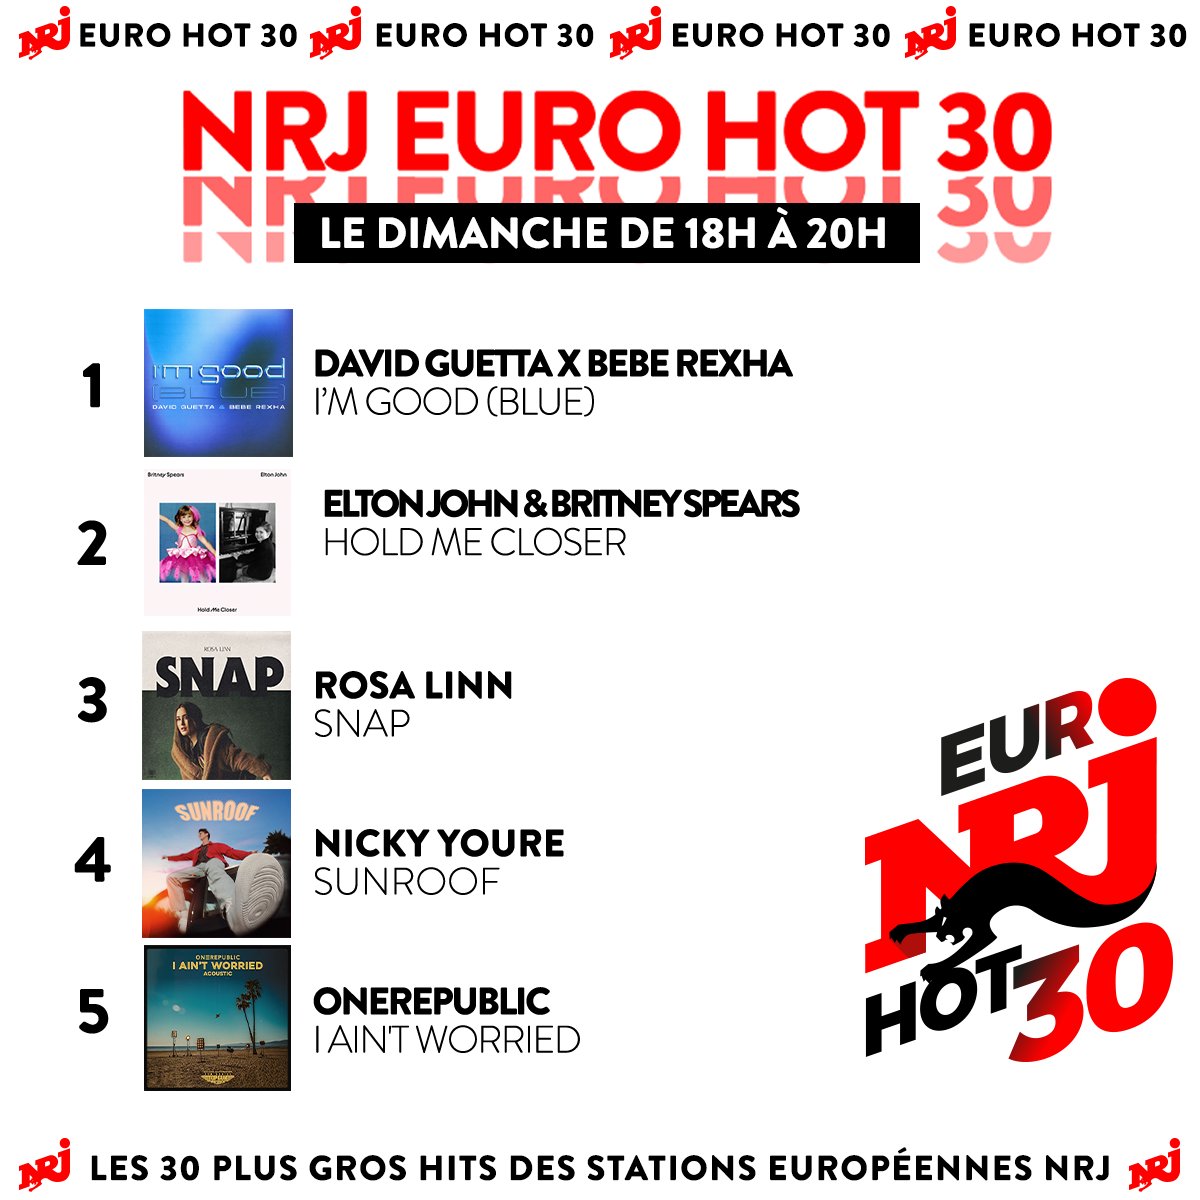 😍 @davidguetta X @BebeRexha sont en 1ère place du classement #EuroHot30 💥(@britneyspears & @eltonofficial sont pas loin...) 👉 La suite dimanche prochain à 18h dans #EuroHot30 ❤️‍🔥